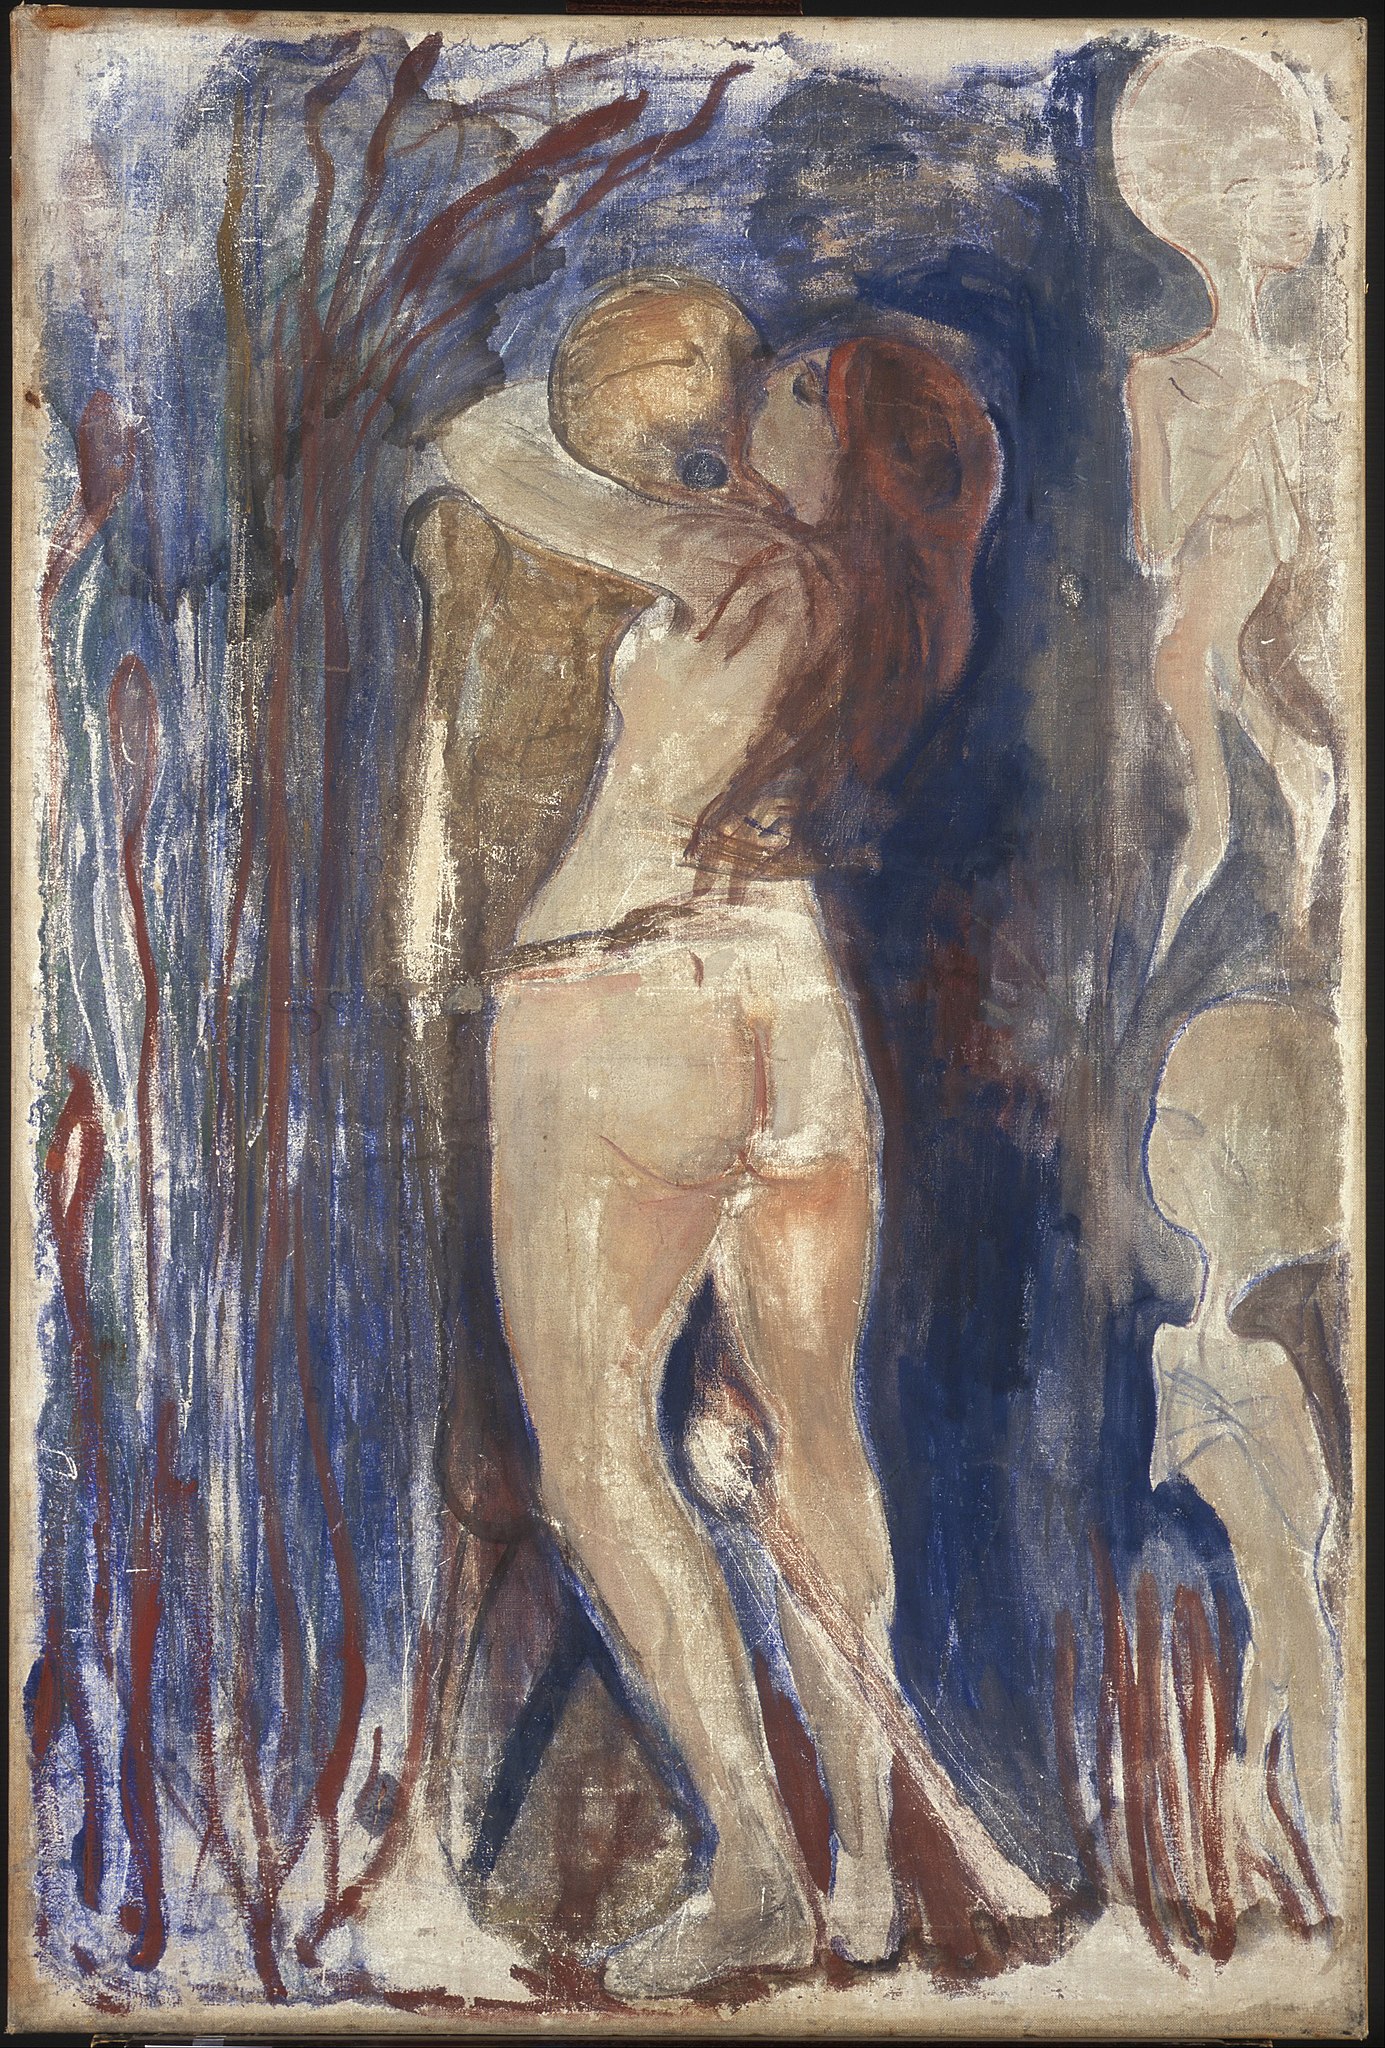 Smrt a život by Edvard Munch - 1894 - 86 x 128 cm 